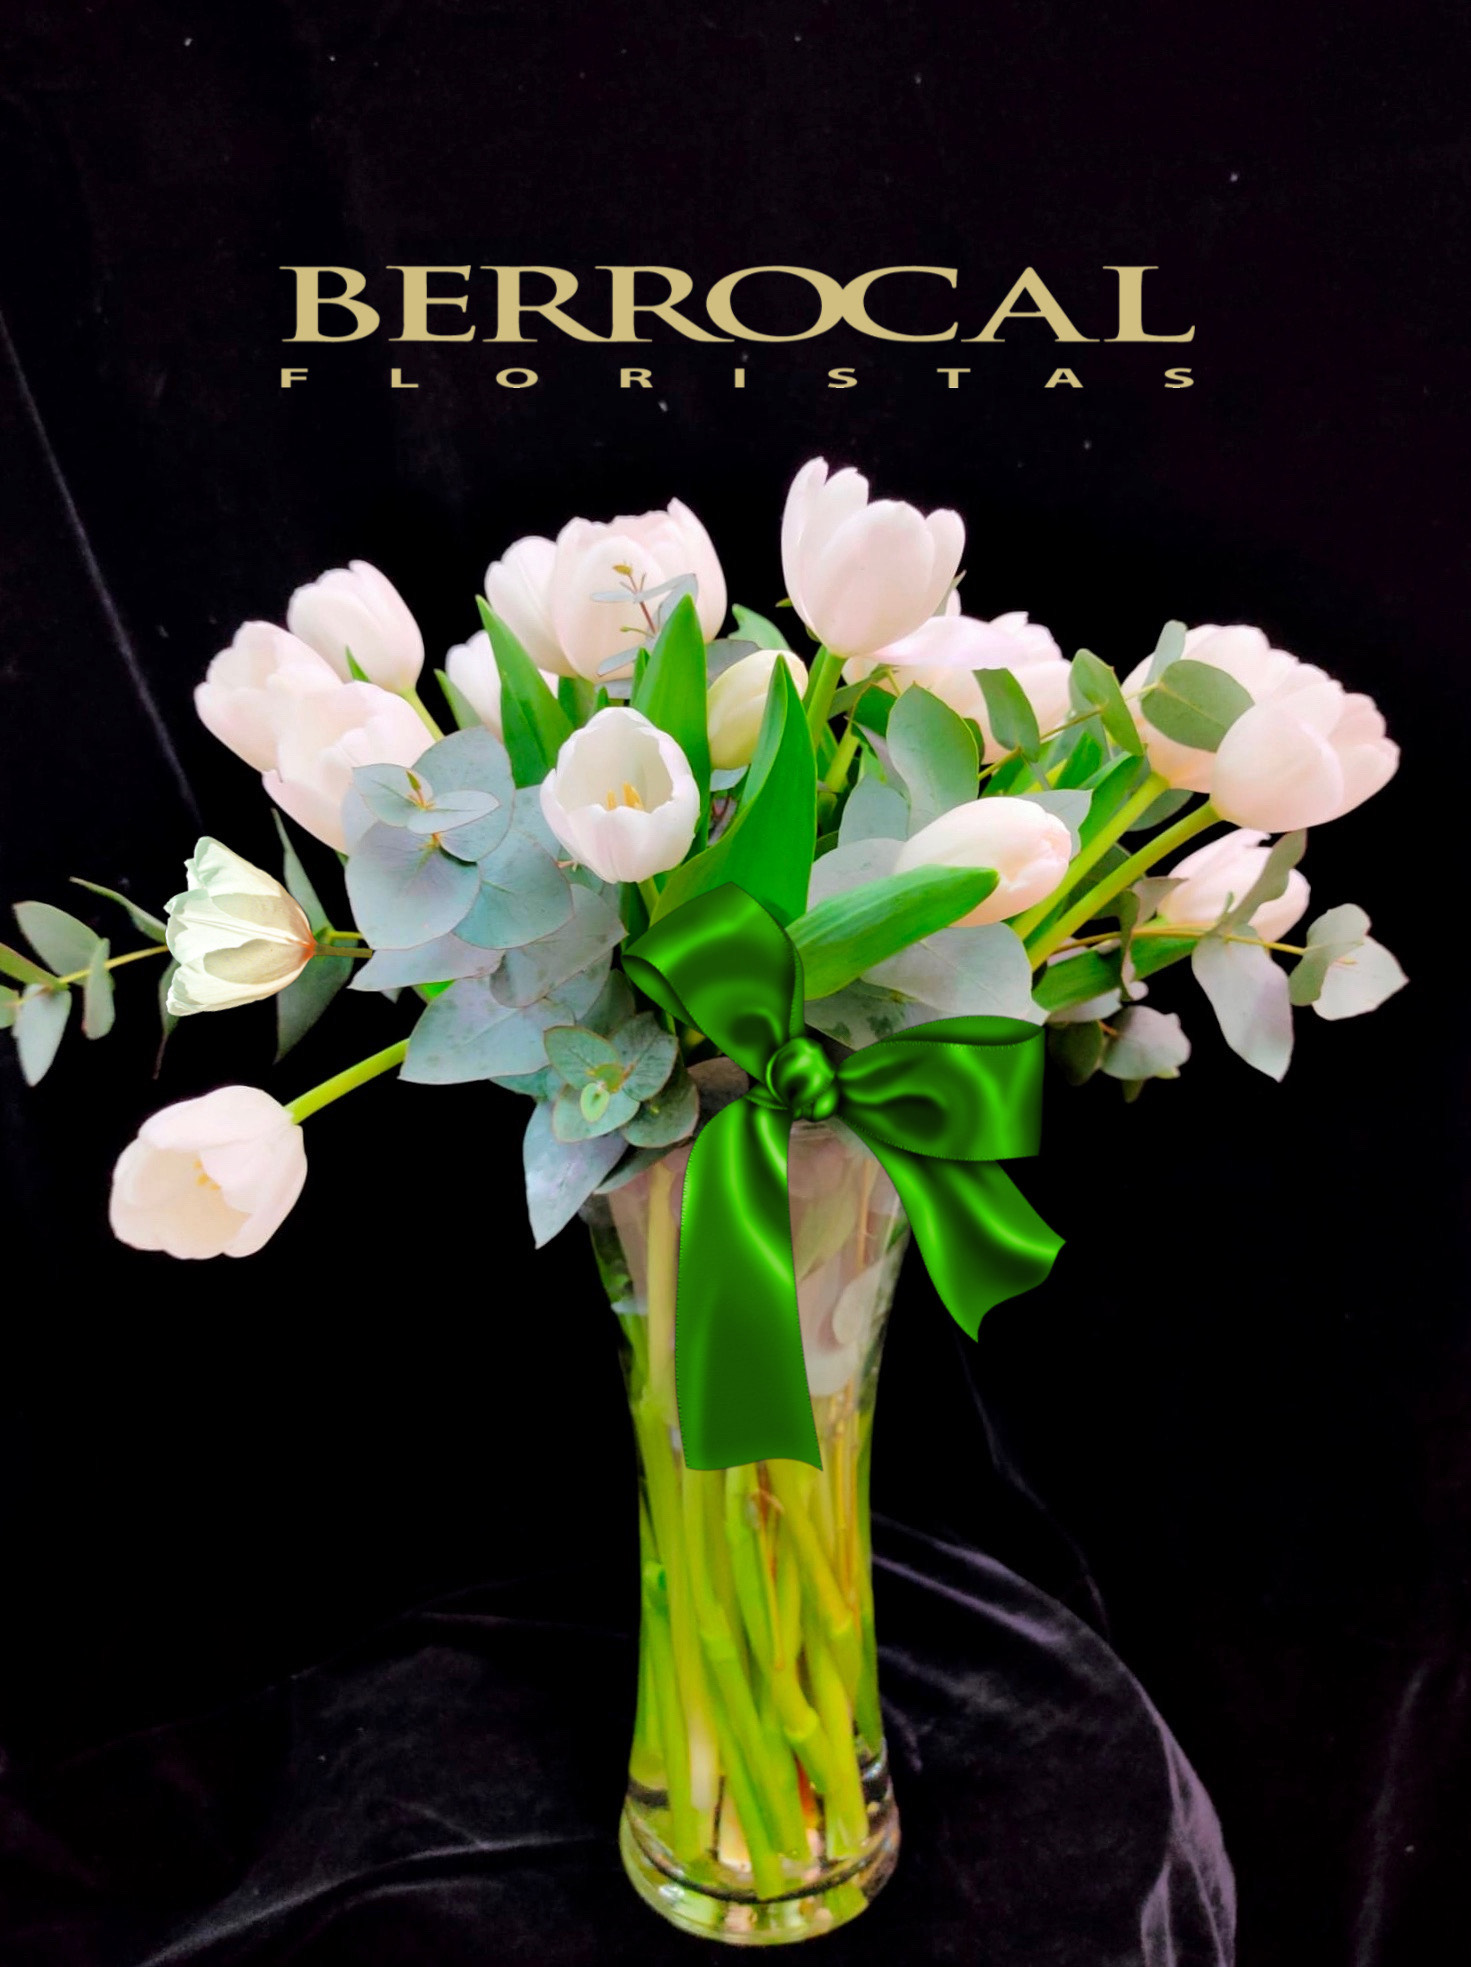 C-15 Composición tulipanes blancos en cristal. Consultar disponibilidad. -  Floristería en Marbella Berrocal flores a domicilio.